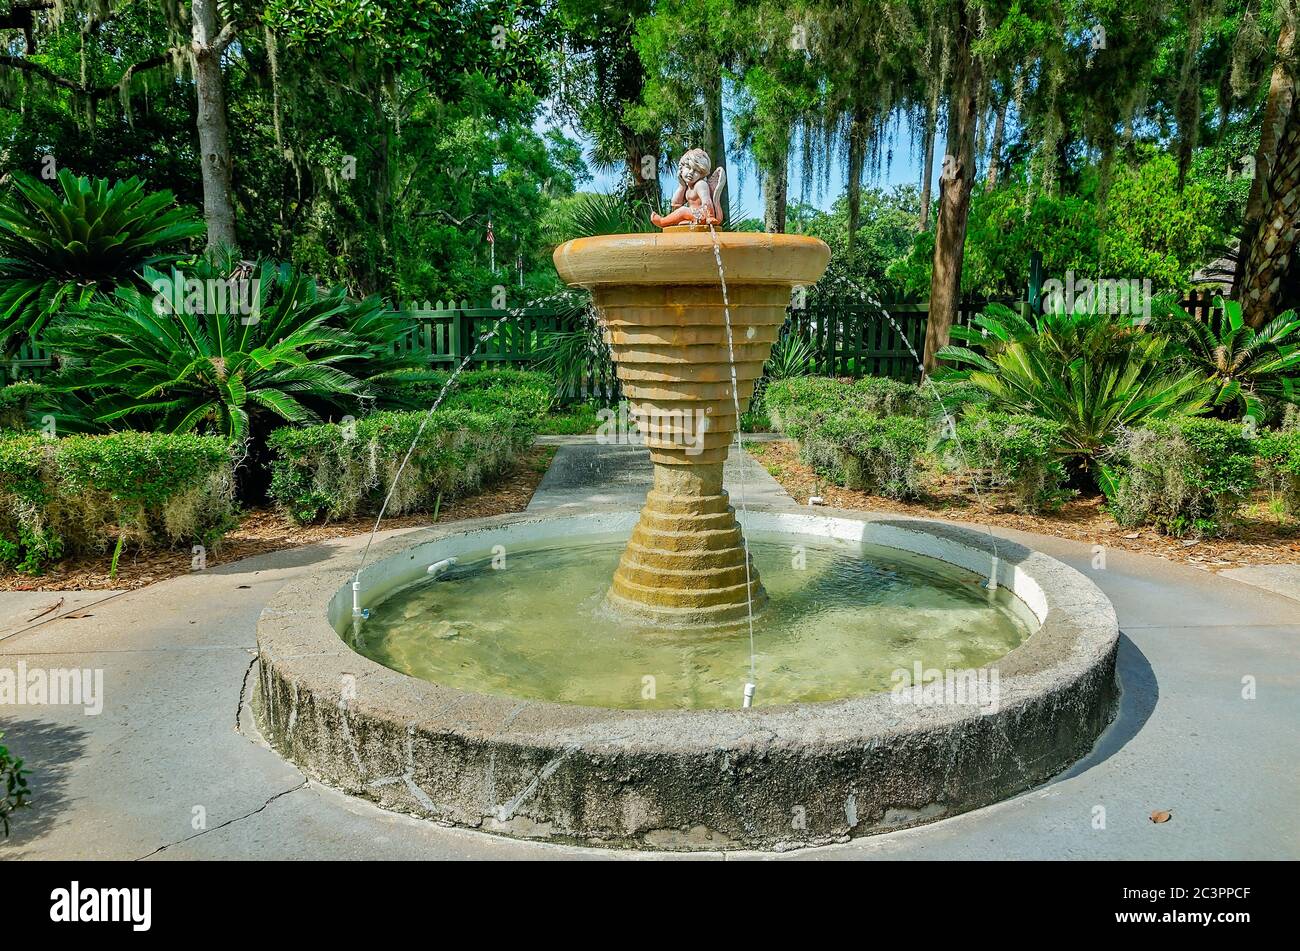 Un chérubin est installé au sommet d'une fontaine dans le jardin de la fontaine de Leon du parc archéologique de la jeunesse de Ponce à St. Augustine, Floride. Banque D'Images